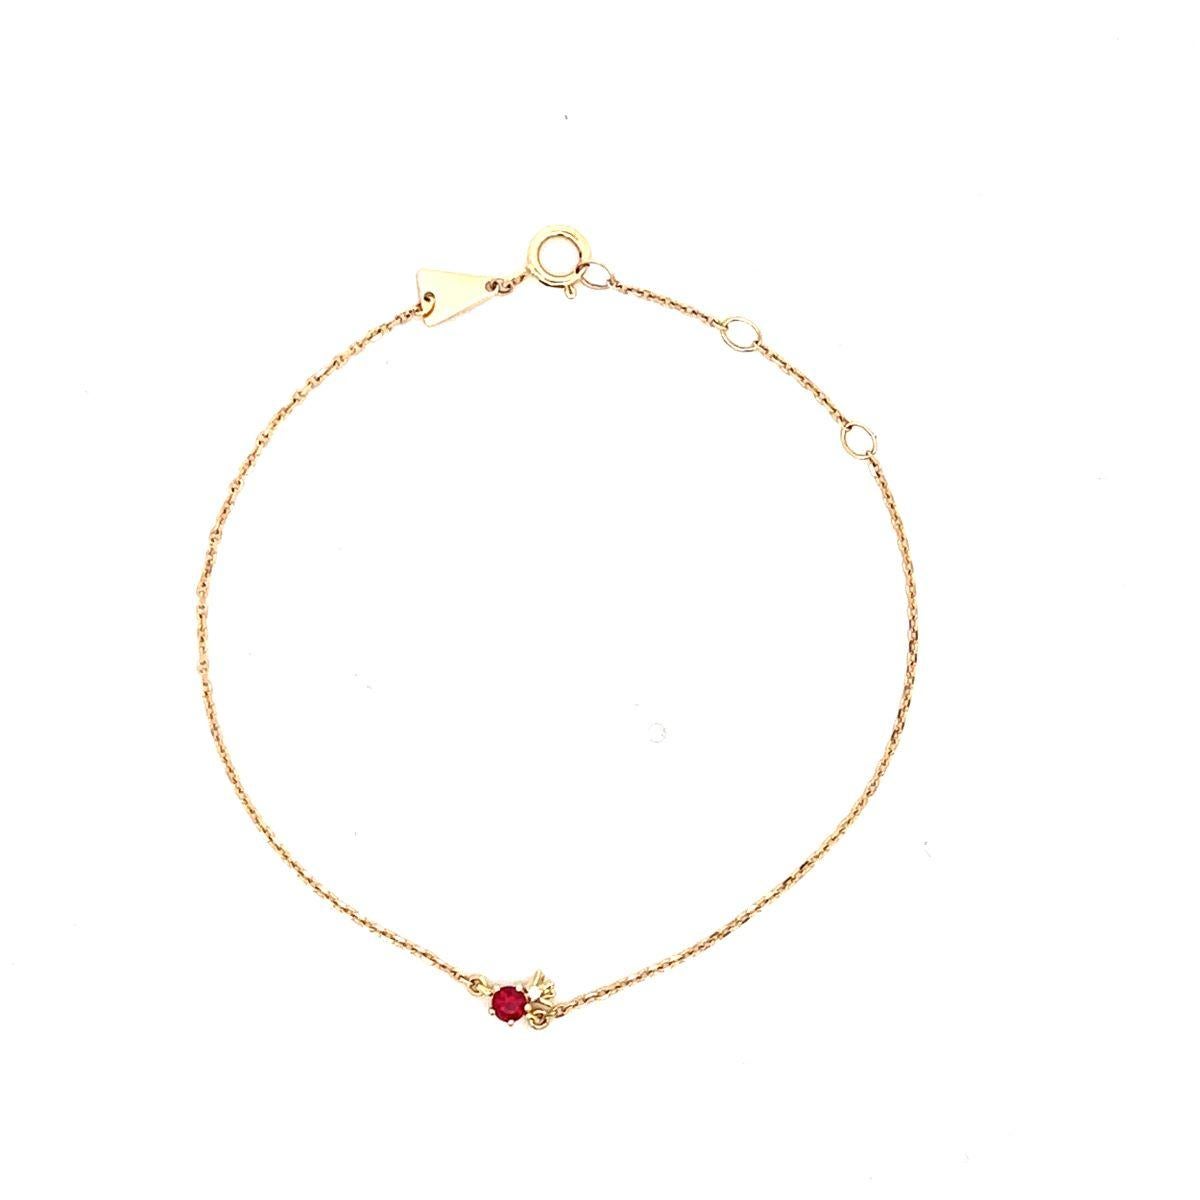 Adina Reyter Einzigartige Rubin + Diamant-Granatapfel-Armband - Y14

Dies ist ein 14K Gelbgold Kette Armband mit einem Rubin und Diamant Granatapfel. 

Abmessungen: Der Granatapfel misst 5 mm x 3 mm. Einstellbare Längen 6